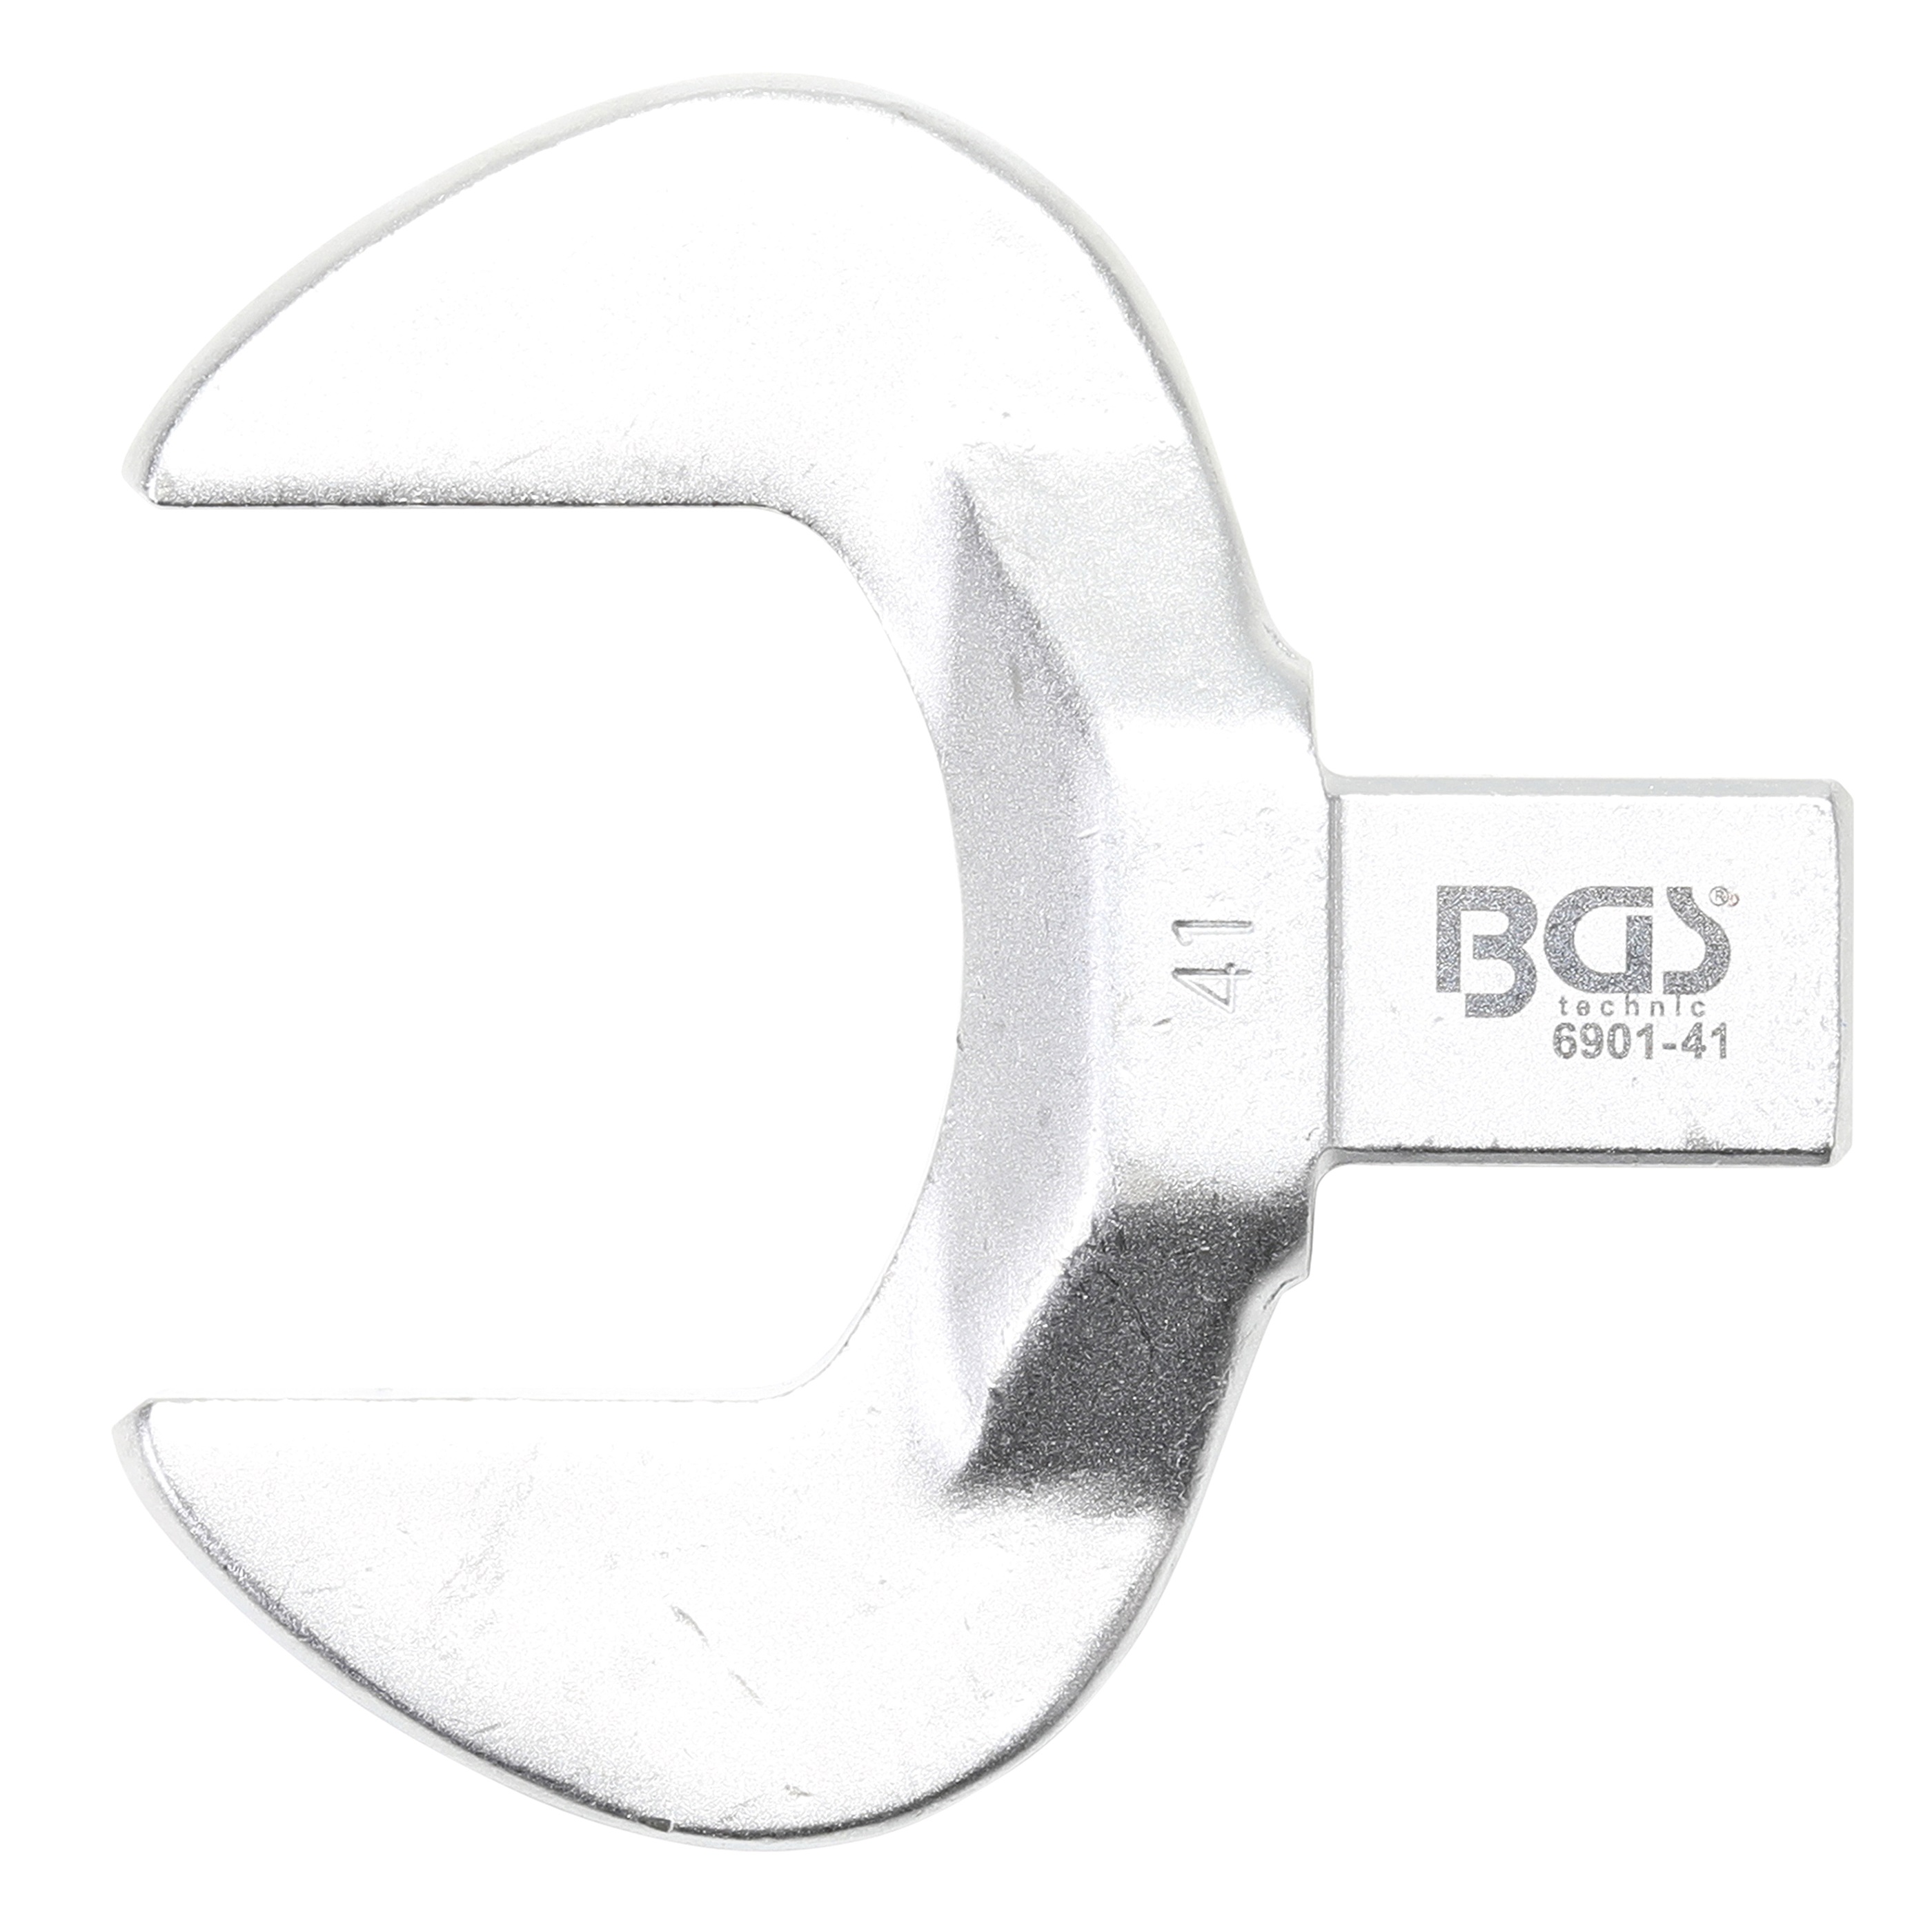 Kľúč nástrčný plochý vidlicový, 41 mm, 4-hran 14 x 18 mm, BGS 6901-41